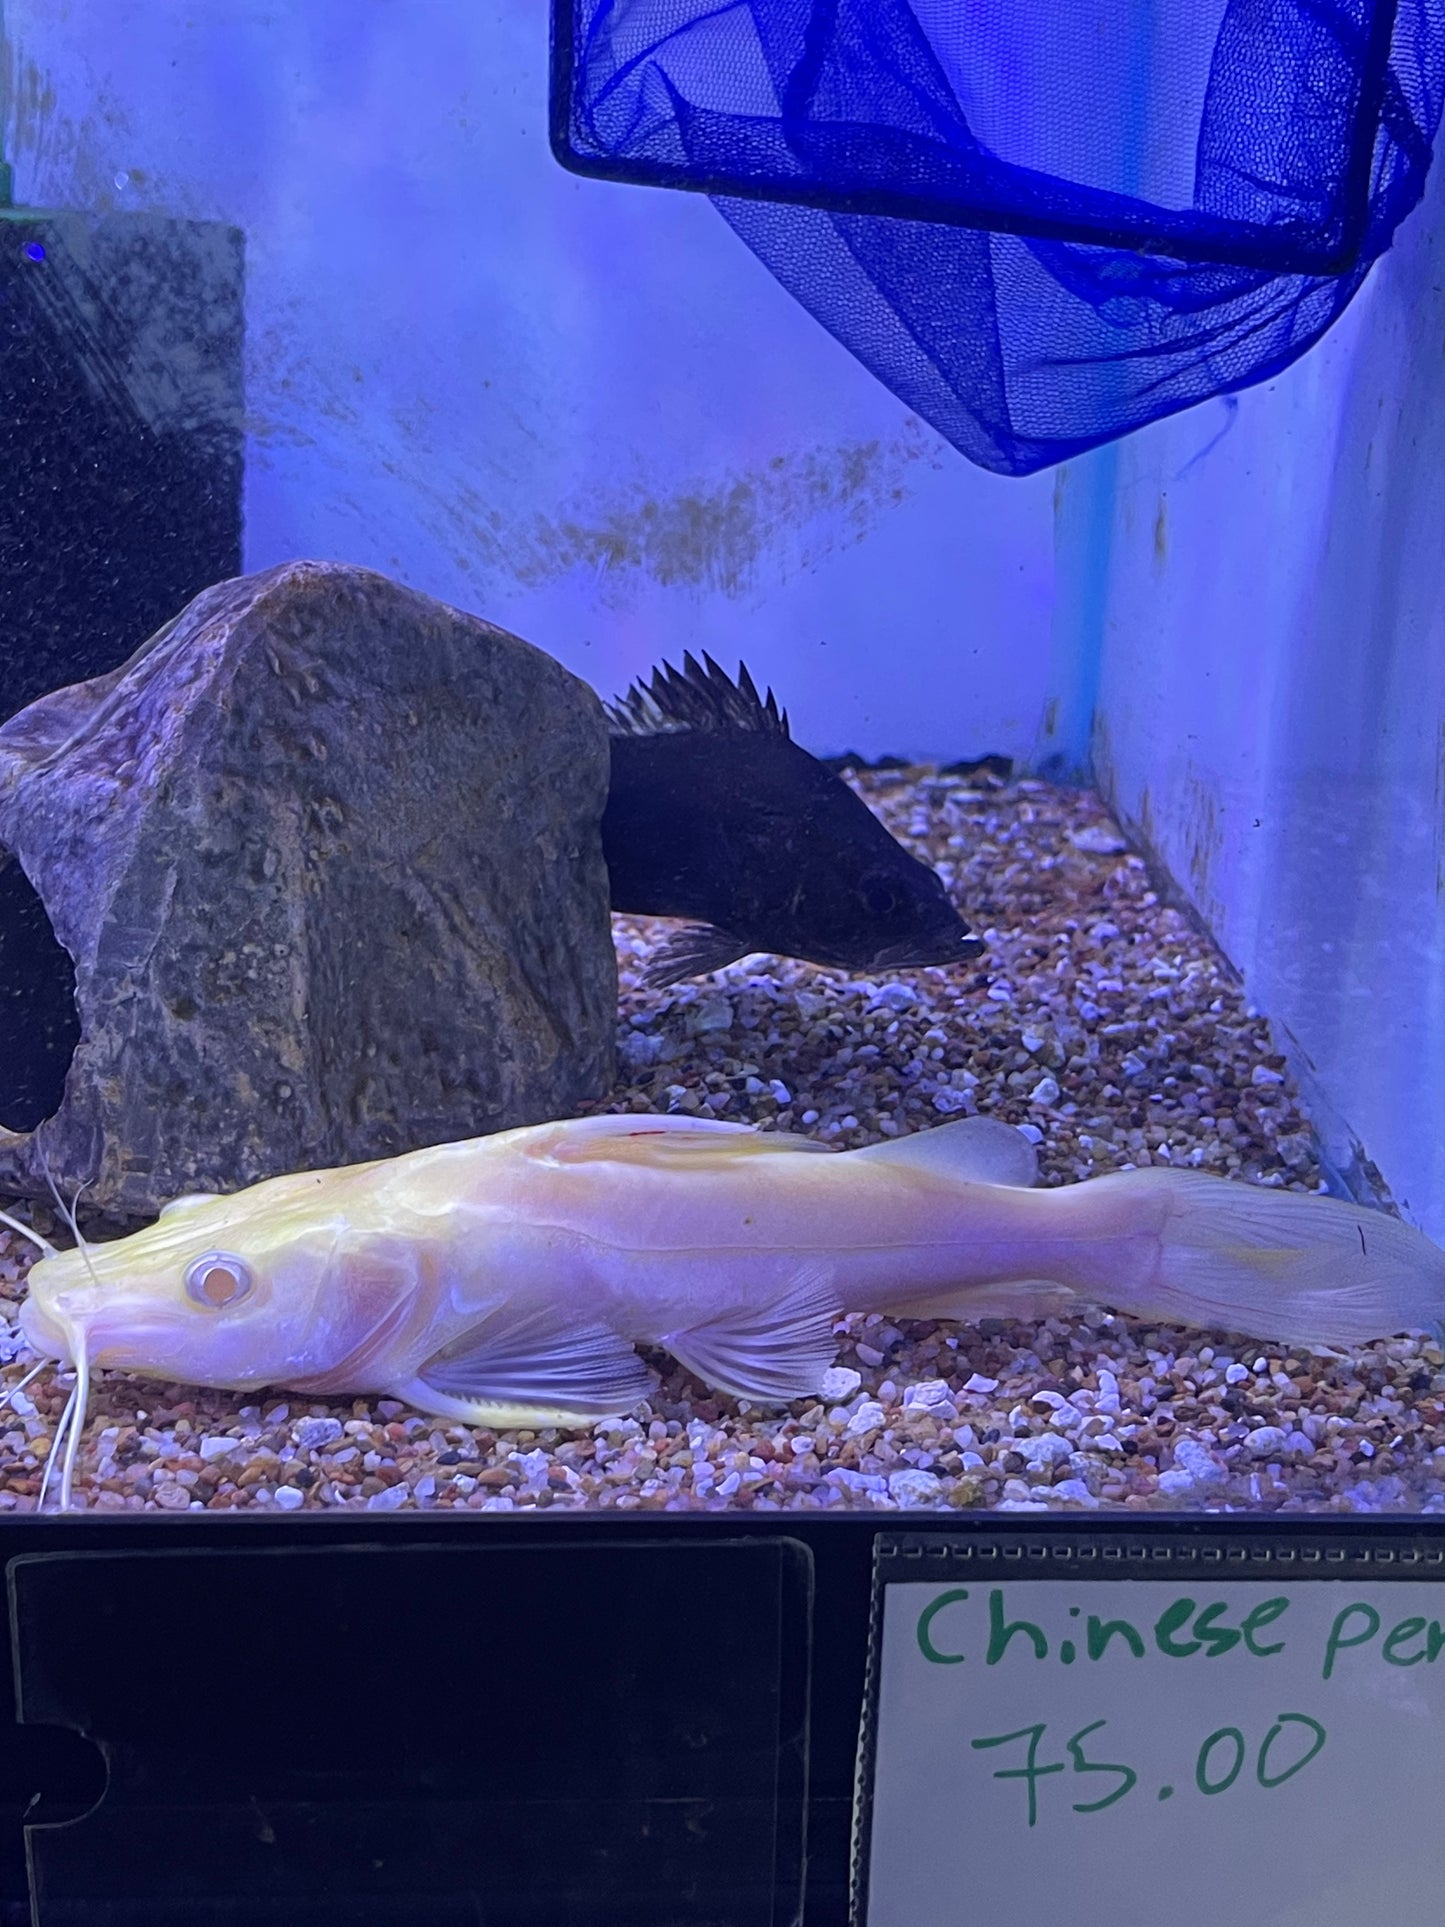 Super Rare !! Wild Albino chrysichthys sp Catfish